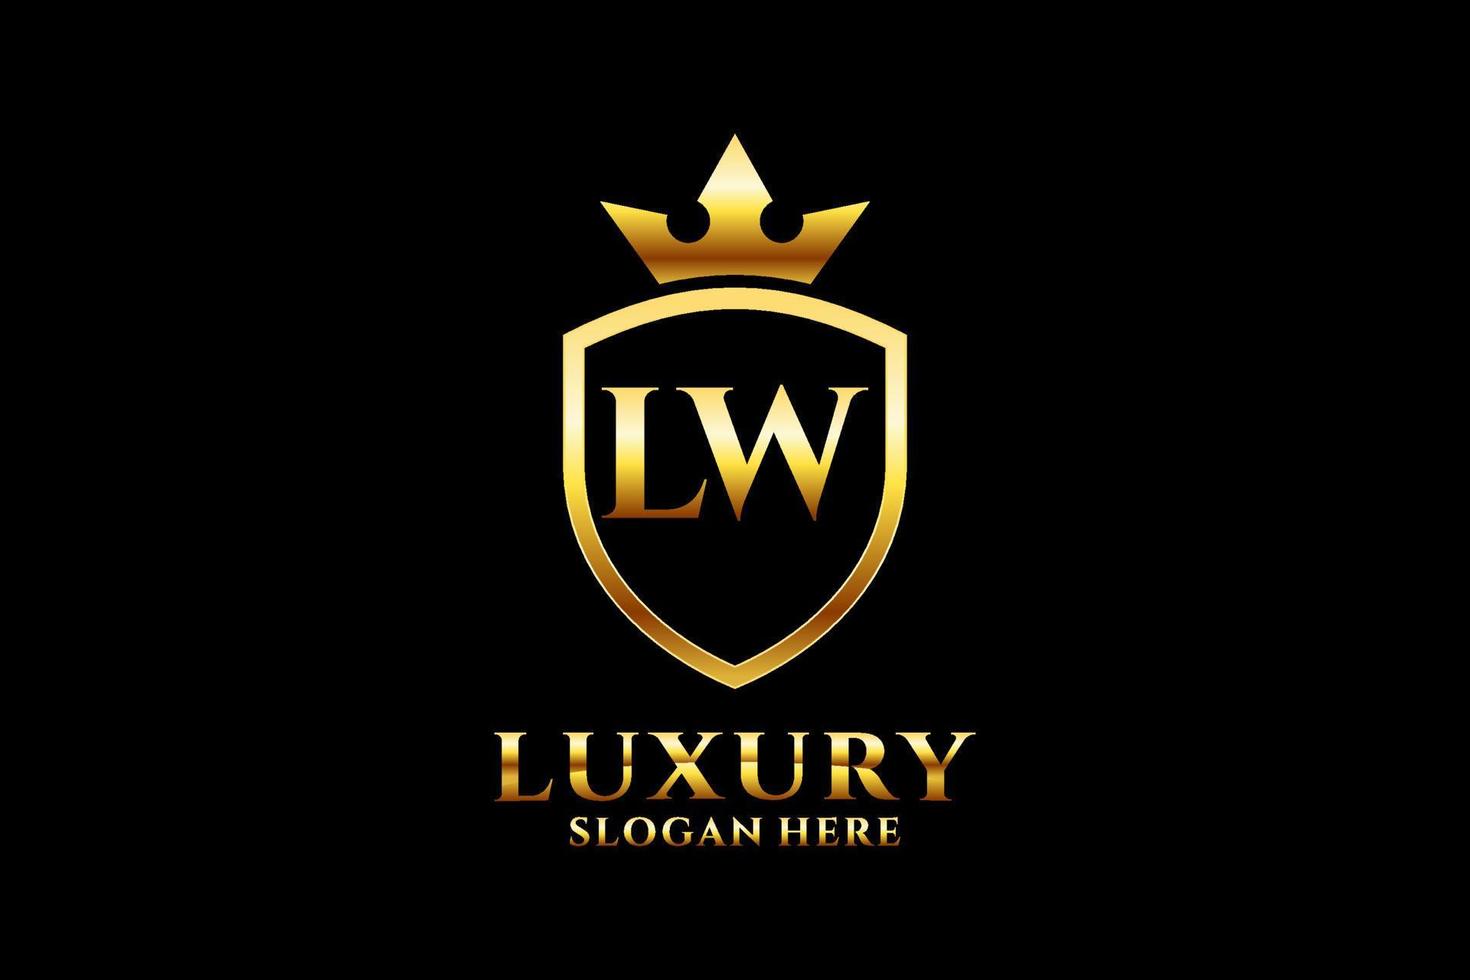 logotipo de monograma de lujo inicial lw elegante o plantilla de placa con pergaminos y corona real - perfecto para proyectos de marca de lujo vector